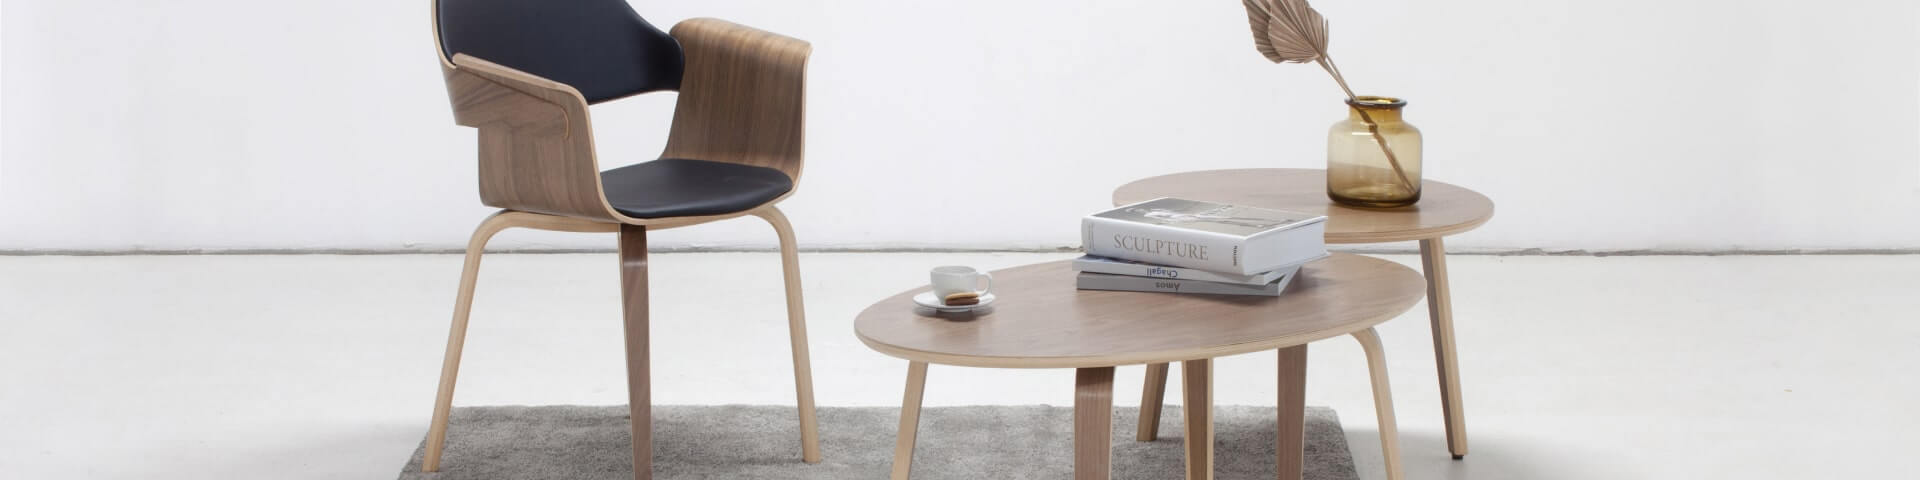 Egy skandináv tölgyfa dohányzóasztal két karfás székkel, amelyek stílusos és meghitt nappali teret teremtenek.